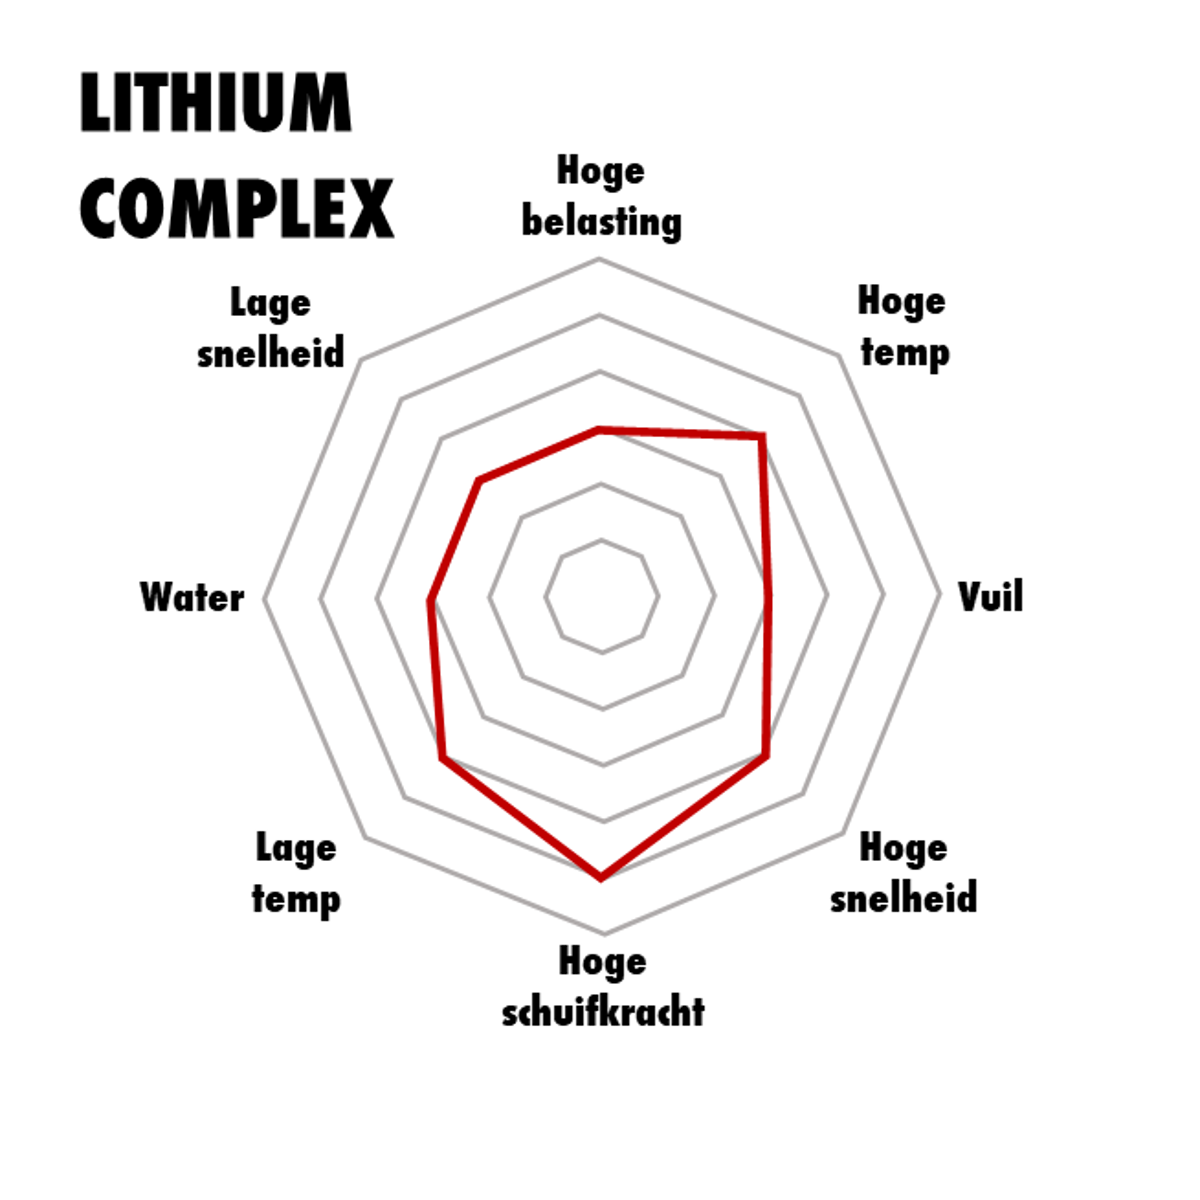 Lithium complex